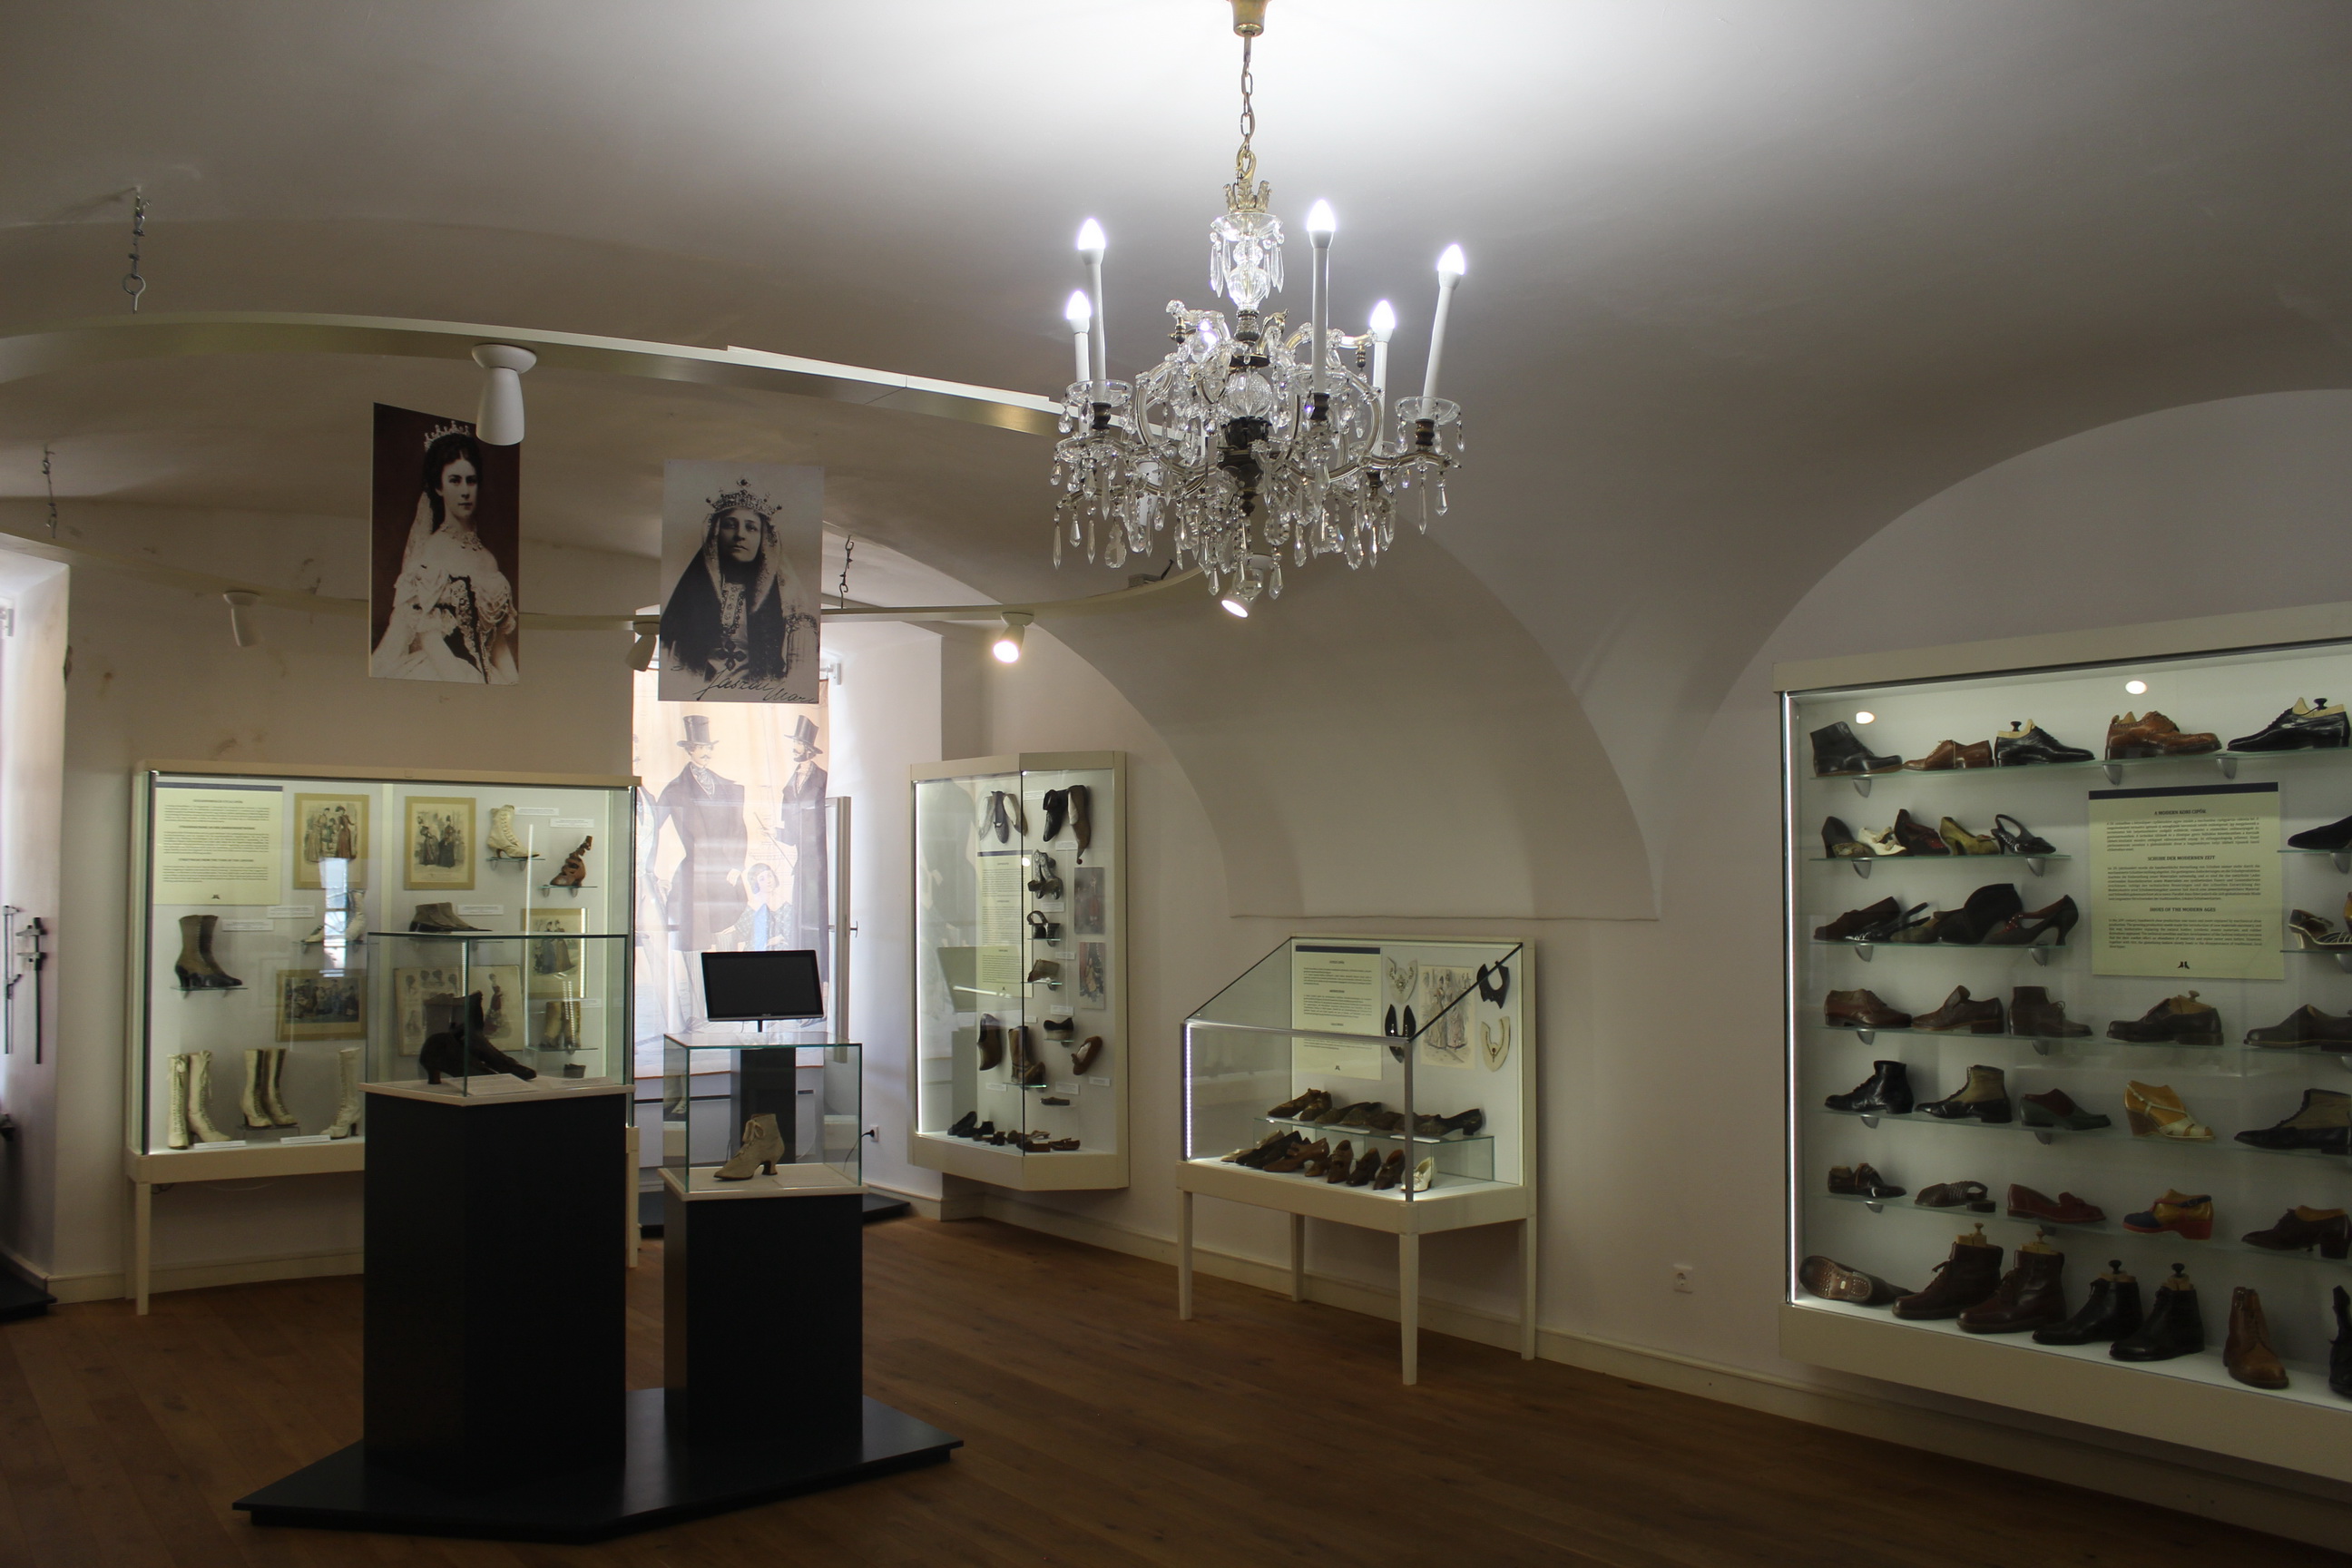 A több száz lábbelit örző cipőtörténeti gyűjtemény Erzsébet királyné és Jászai Mari cipőit is őrzi, 1983 óta Körmenden. 1899-ben alakult meg a bőrgyár Körmenden, cipőt 1937-ben kezdtek gyártani. 1992-ben Marc Cipőgyár Rt. néven dolgoztak. Körmenden 2002-ben, a szombathelyi központban 2006-ban szűnt meg a gyártás. (fotó: Papp Géza, ddkektura.blog.hu)